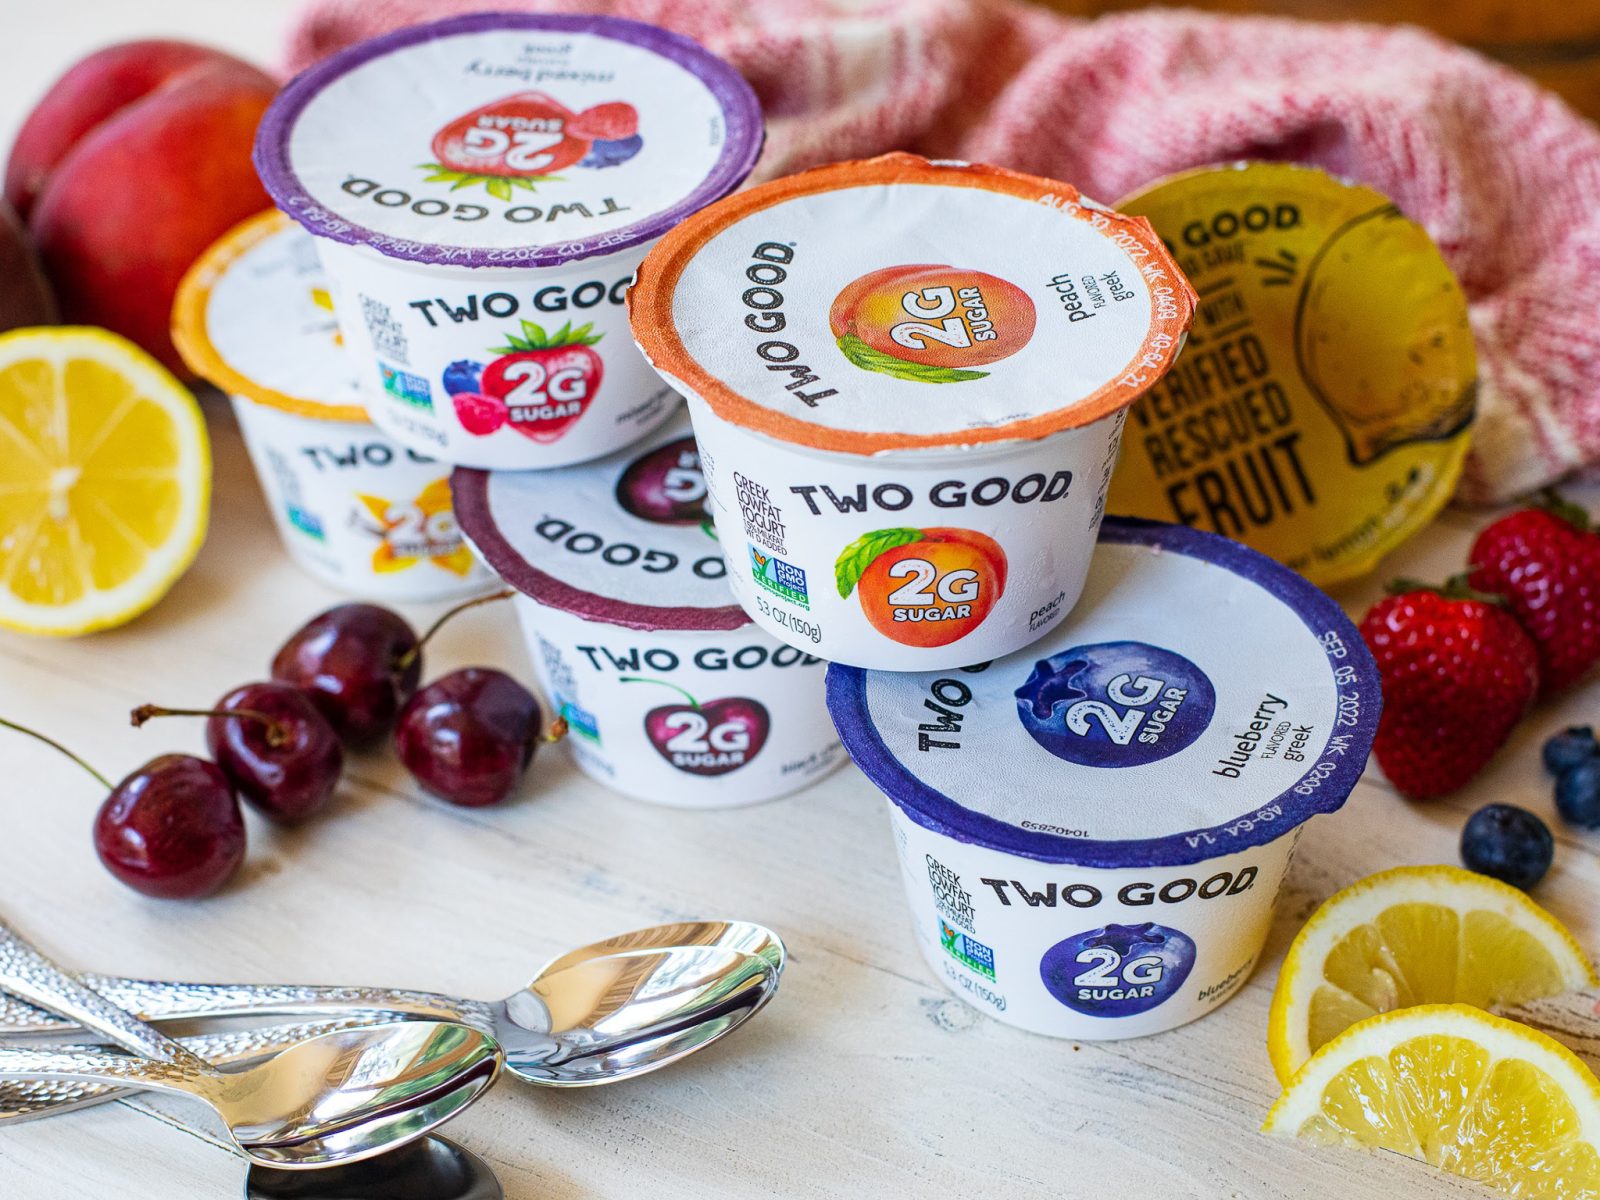 Grab Dannon Two Good Greek Yogurt For Just 99¢ Per Cup At Kroger